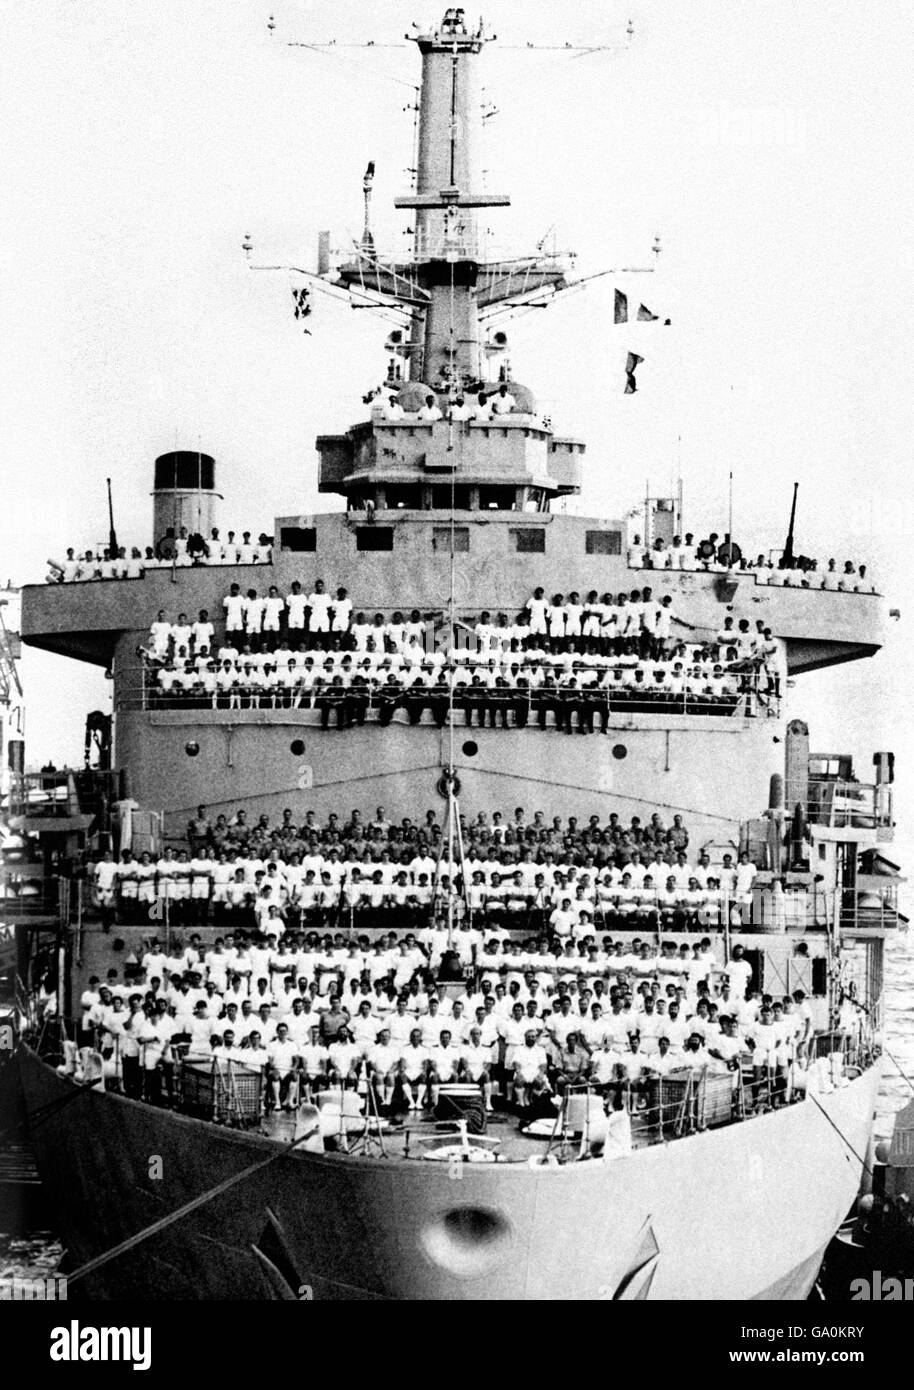 Collectez une photo du HMS Intrepid et de son équipage en 1981. Le navire d'assaut a servi pendant la guerre des Malouines il y a 25 ans. Vers 1981 Banque D'Images